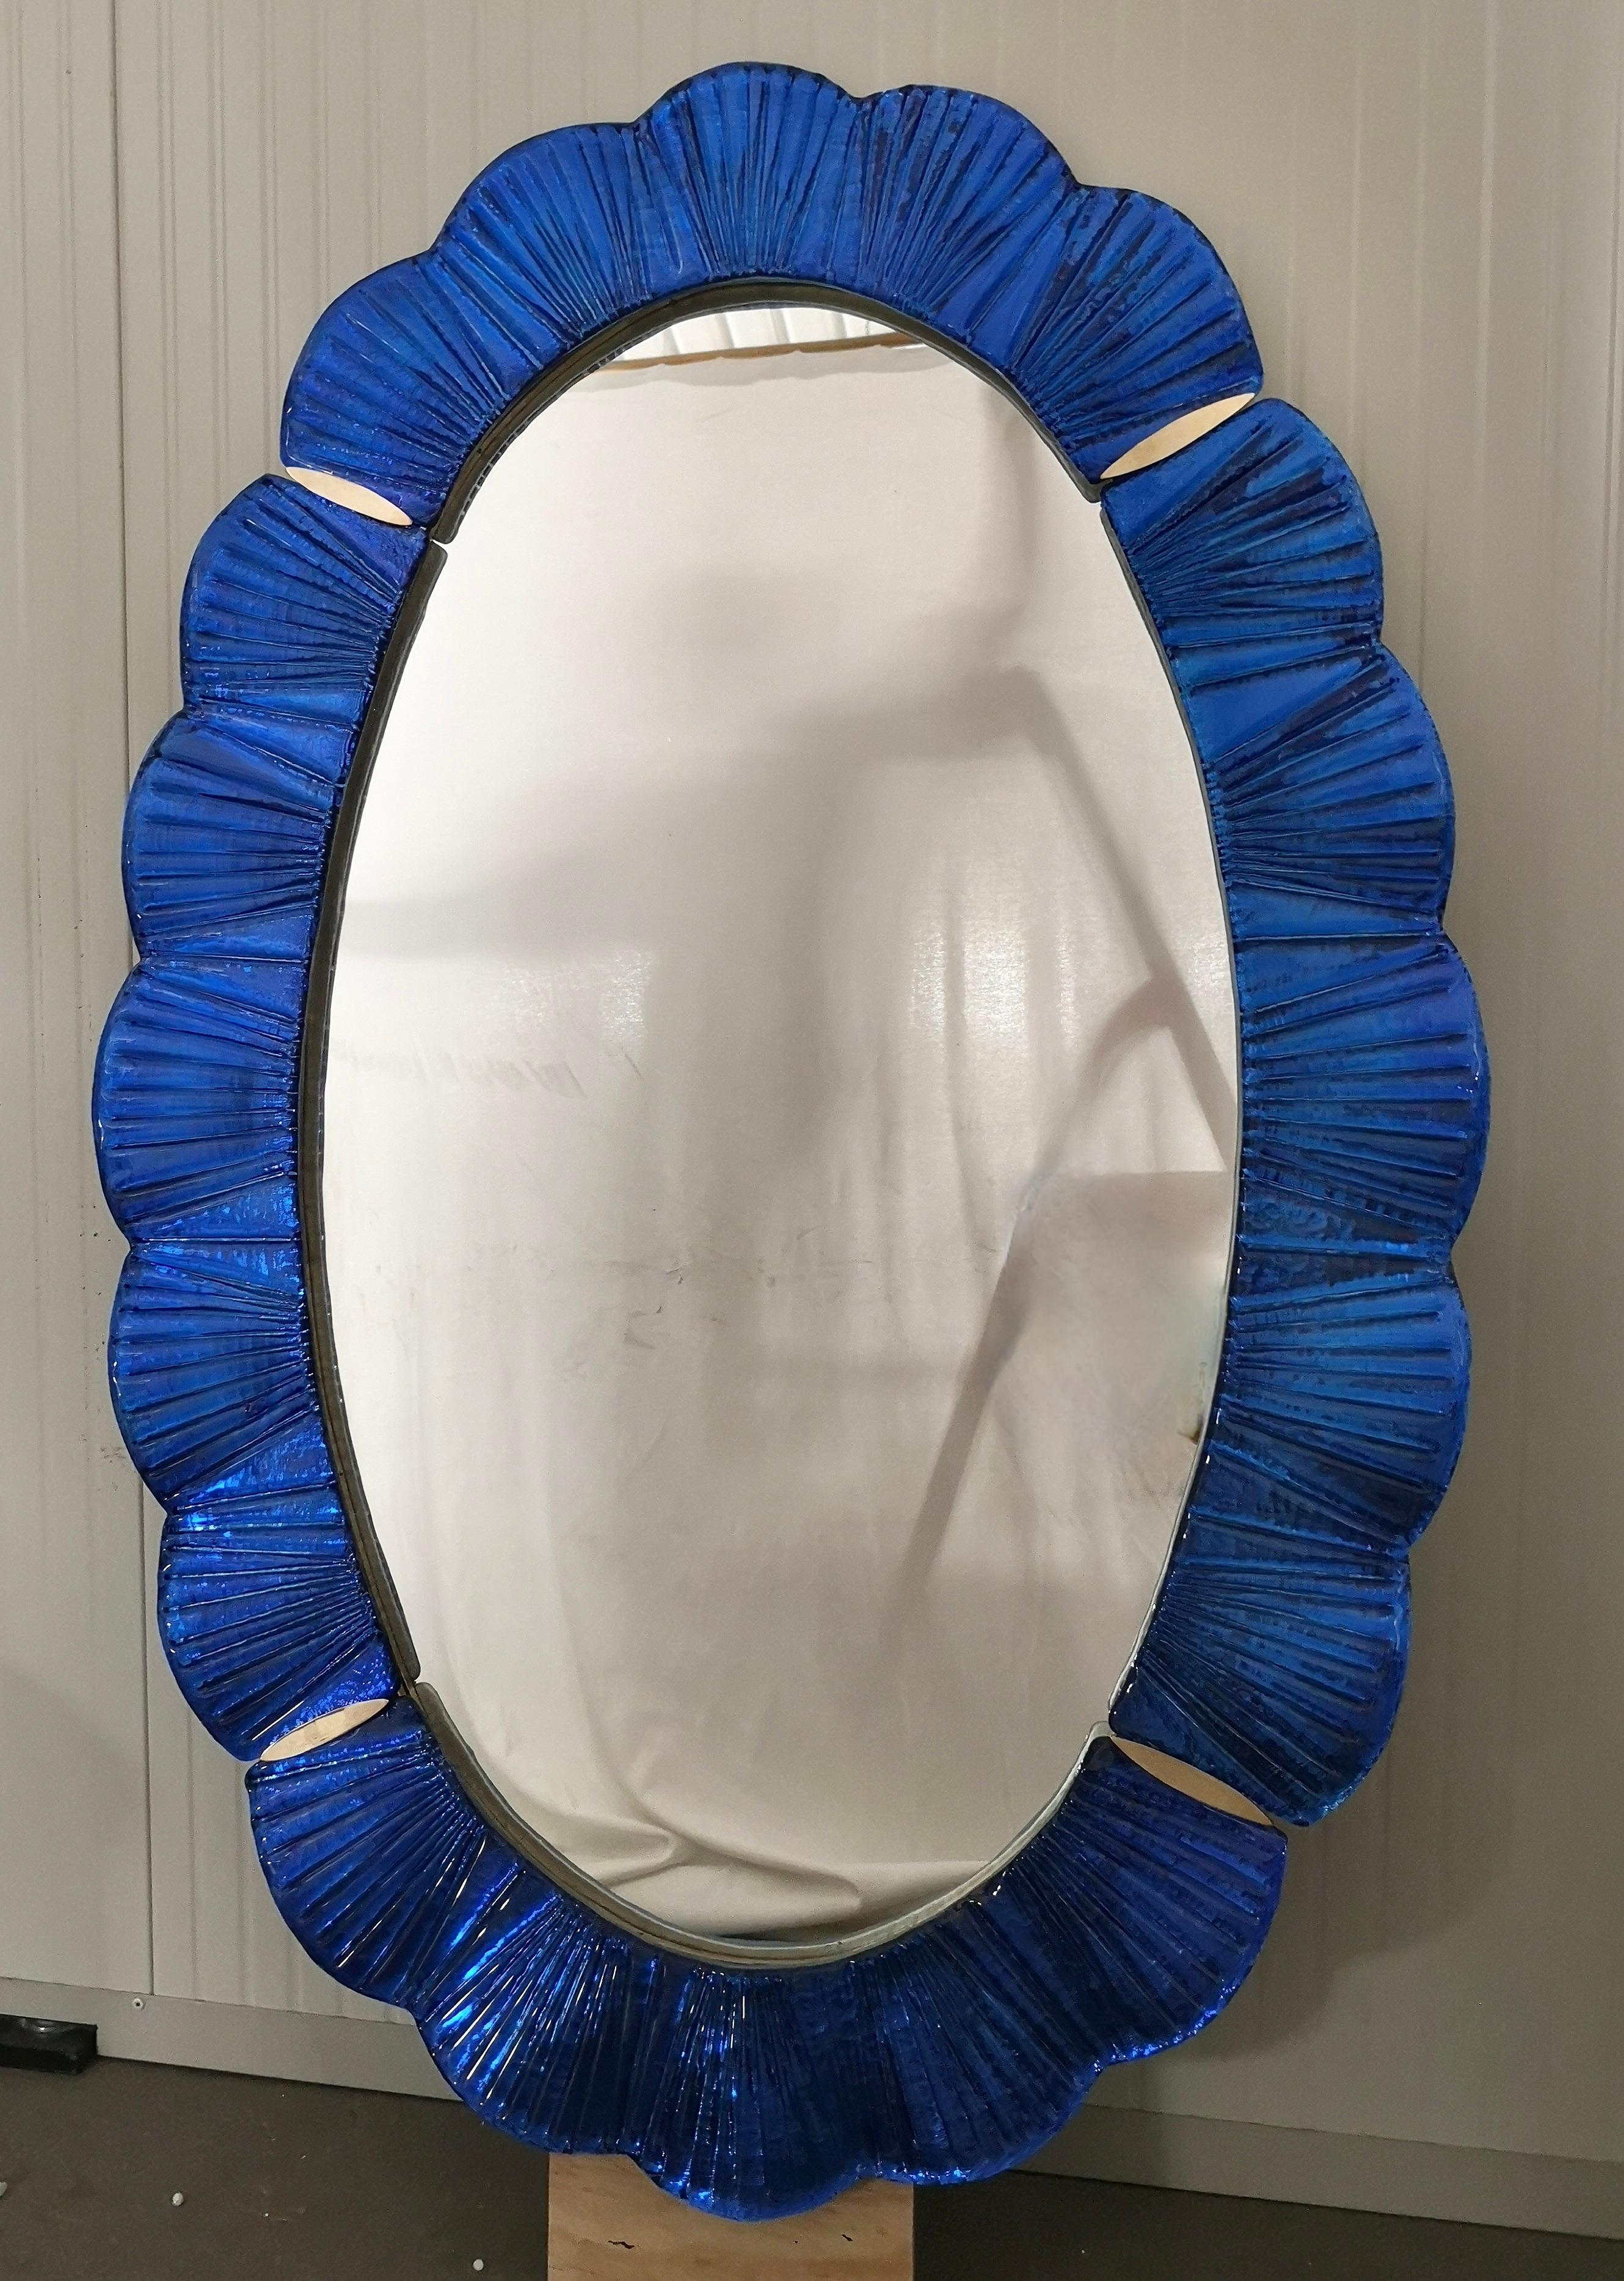 Atemberaubender Spiegel aus leuchtend blauem Murano-Glas, Venedig. Ein Spiegel, der allein Ihr Zuhause einrichtet.

Der Spiegel hat eine Rückwand aus Holz, auf der vier Murano-Glasscheiben montiert sind, die wie auf dem Foto ein Oval bilden. Der